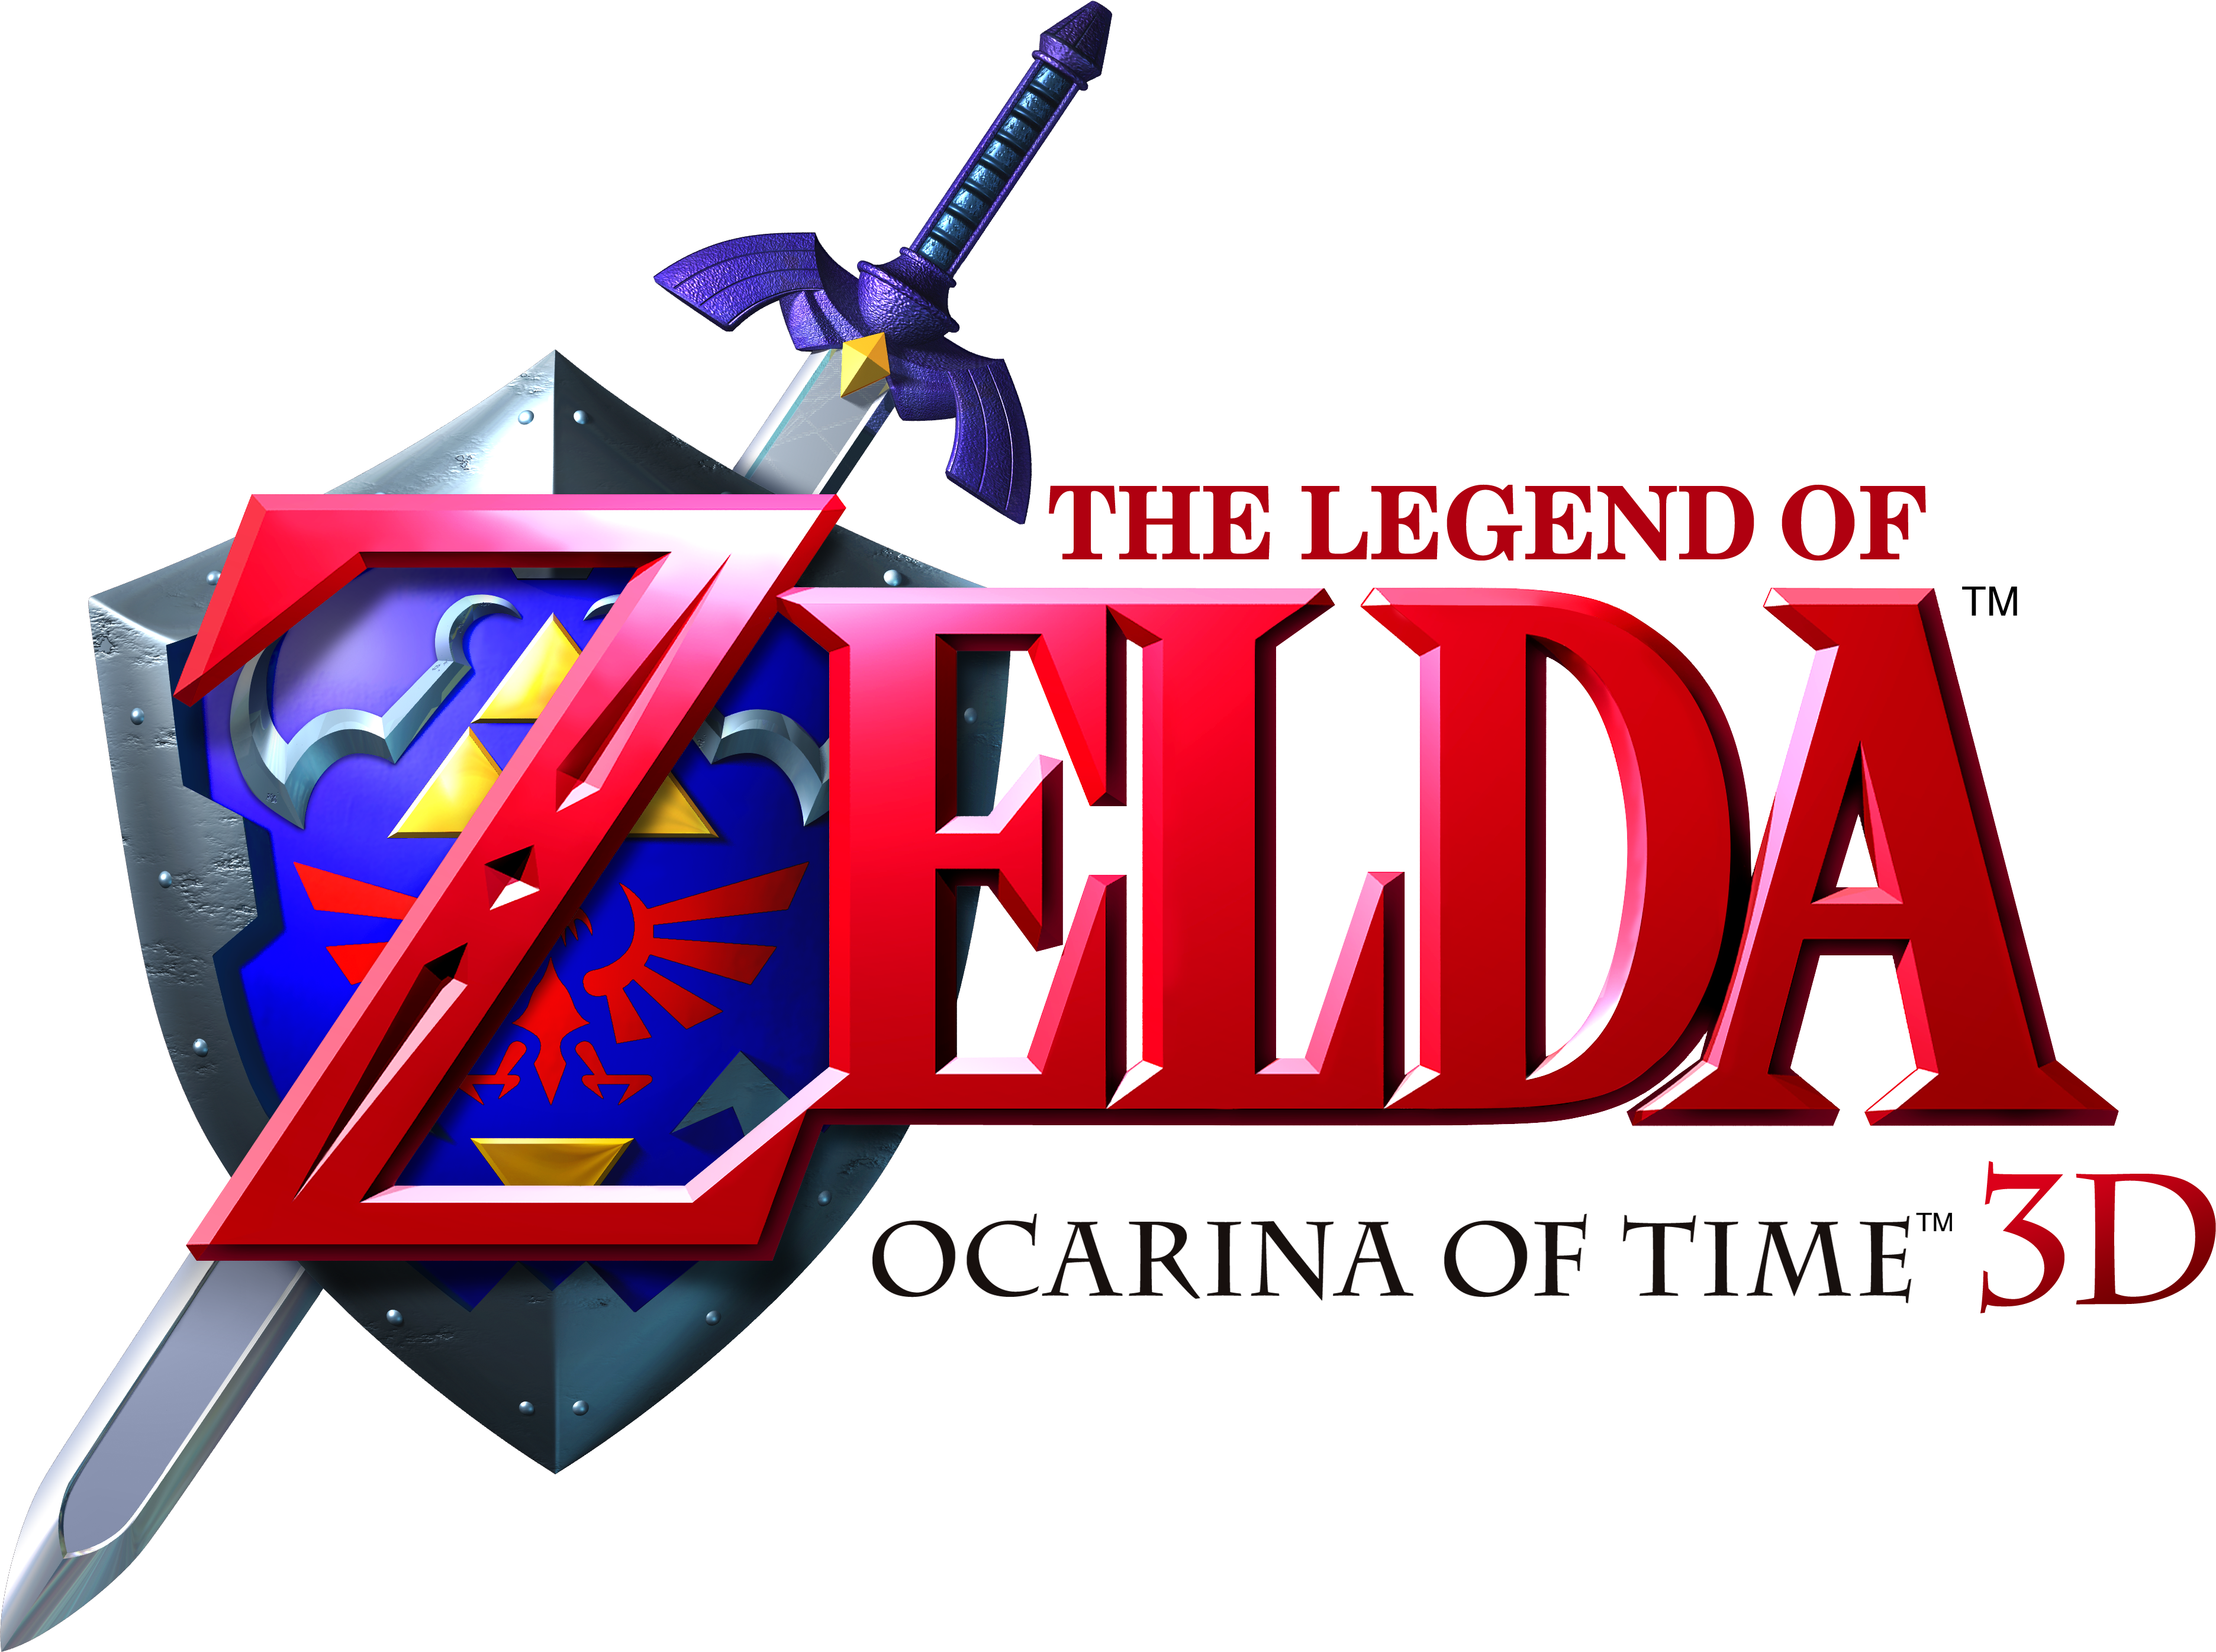 Black Ops 3d Emblem. Ocarina of Time 3D (logo).